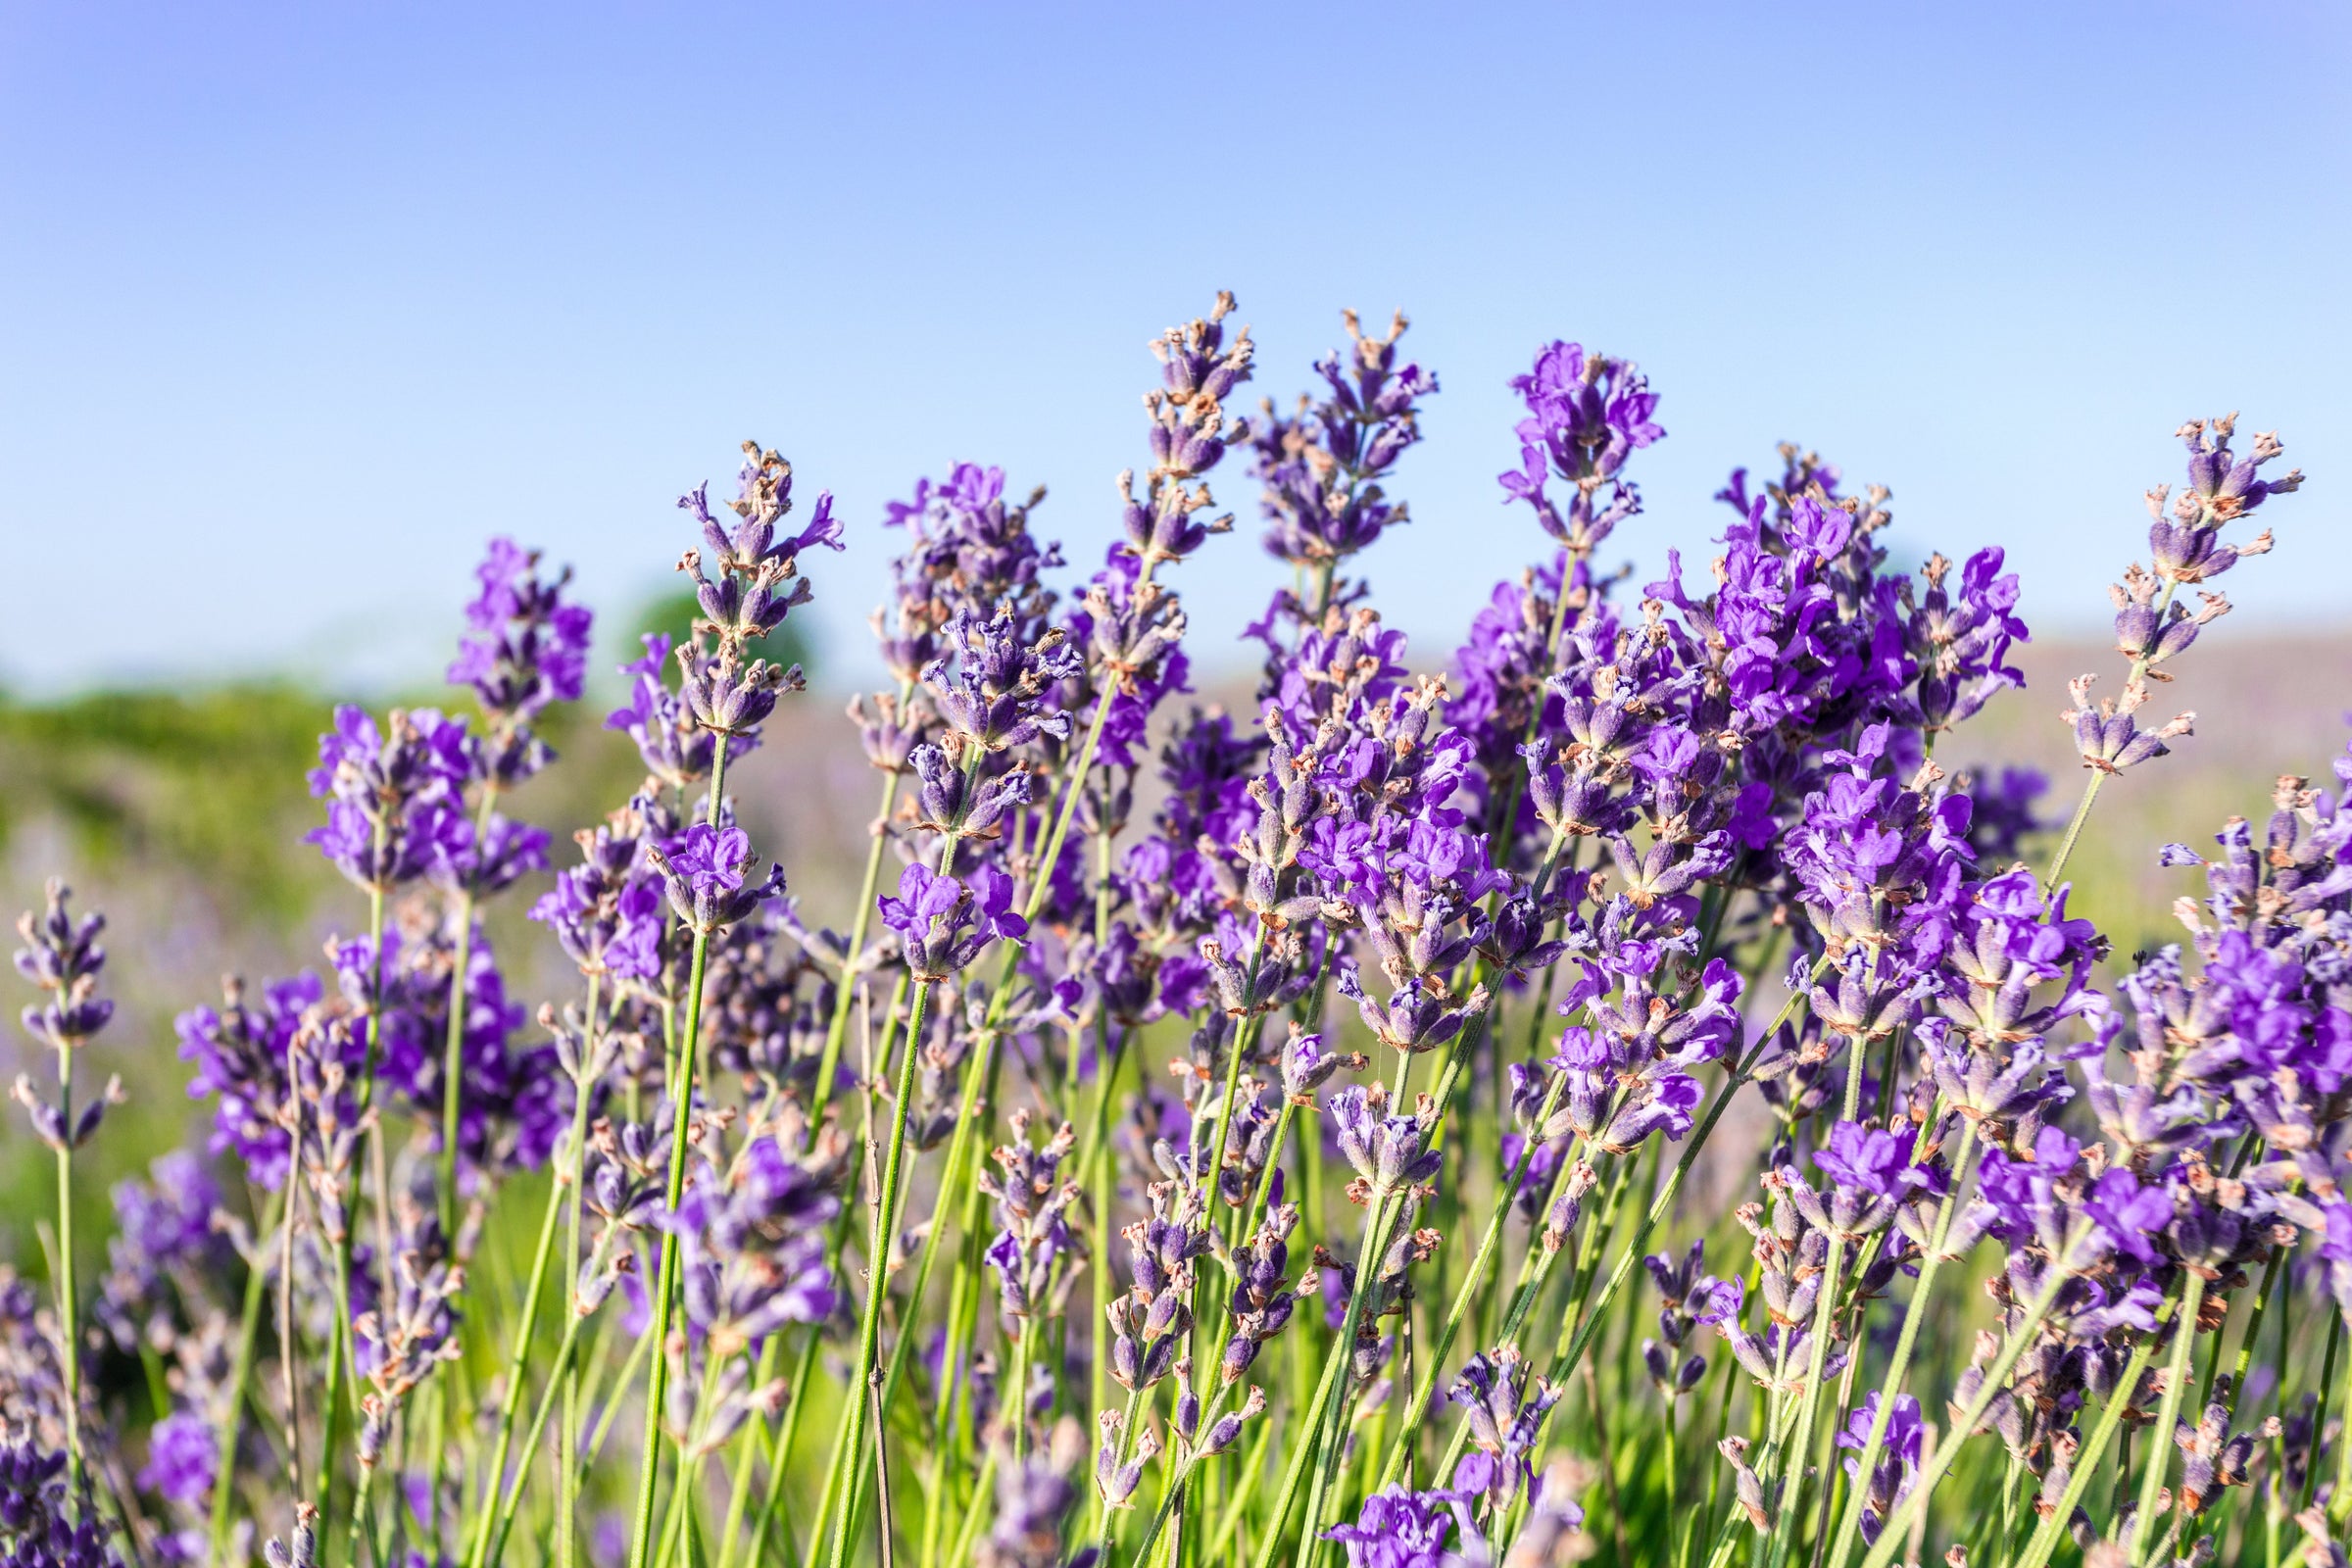 Wholesale manufacturer, supplier & exporter of bulk Lavender essential oils